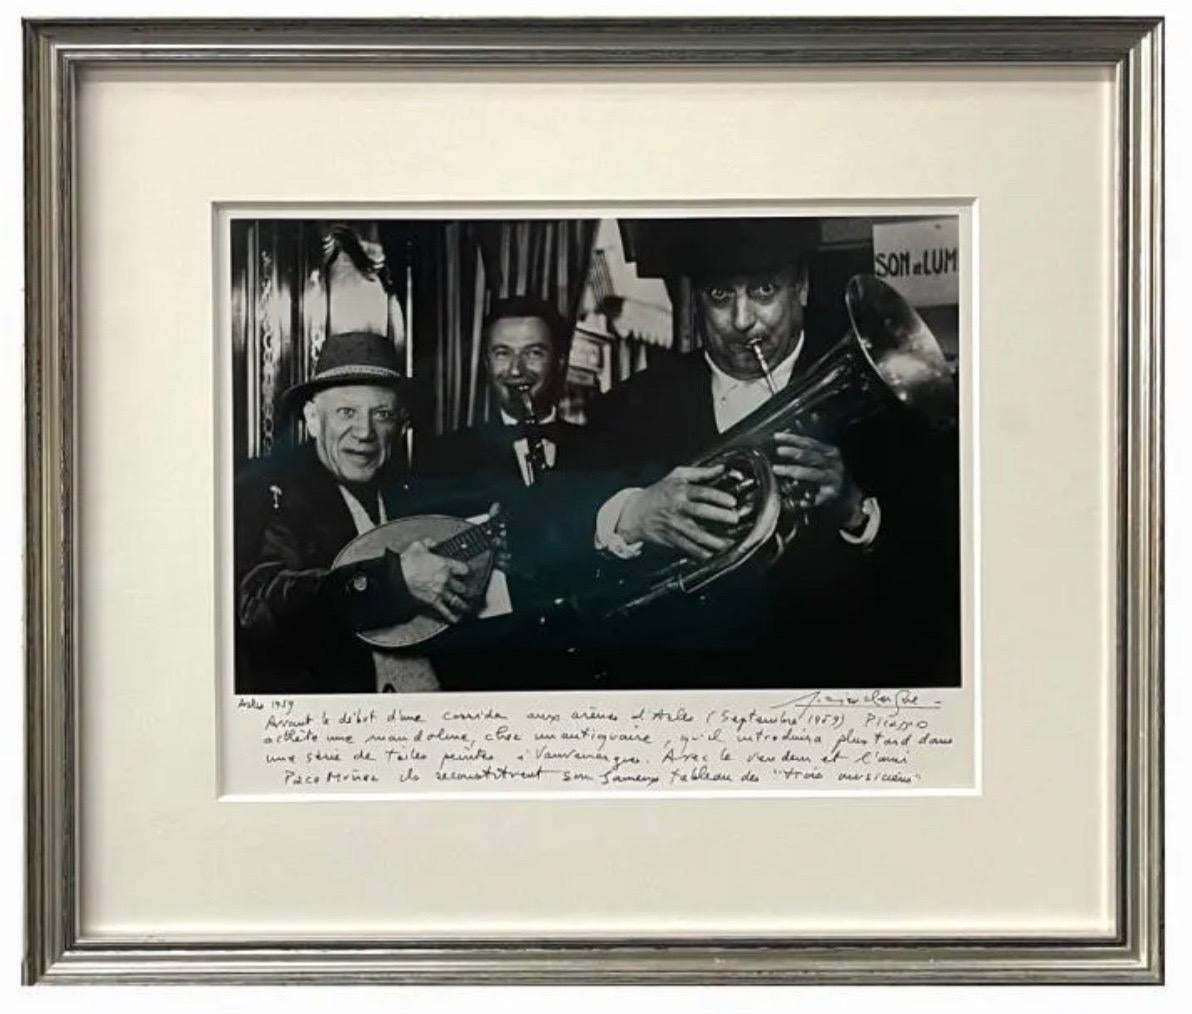 Lucien Clergue (FRANZÖSISCH, 1934 - 2014) 
Fotografischer Gelatinesilberabzug mit der Darstellung von Pablo Picasso, Arles, 1959.
Picasso, der Antiquitätenhändler und Paco Munoz (die drei Musiker), Arles
Ein Jazz- oder Gypsy-Trio.
Vom Künstler